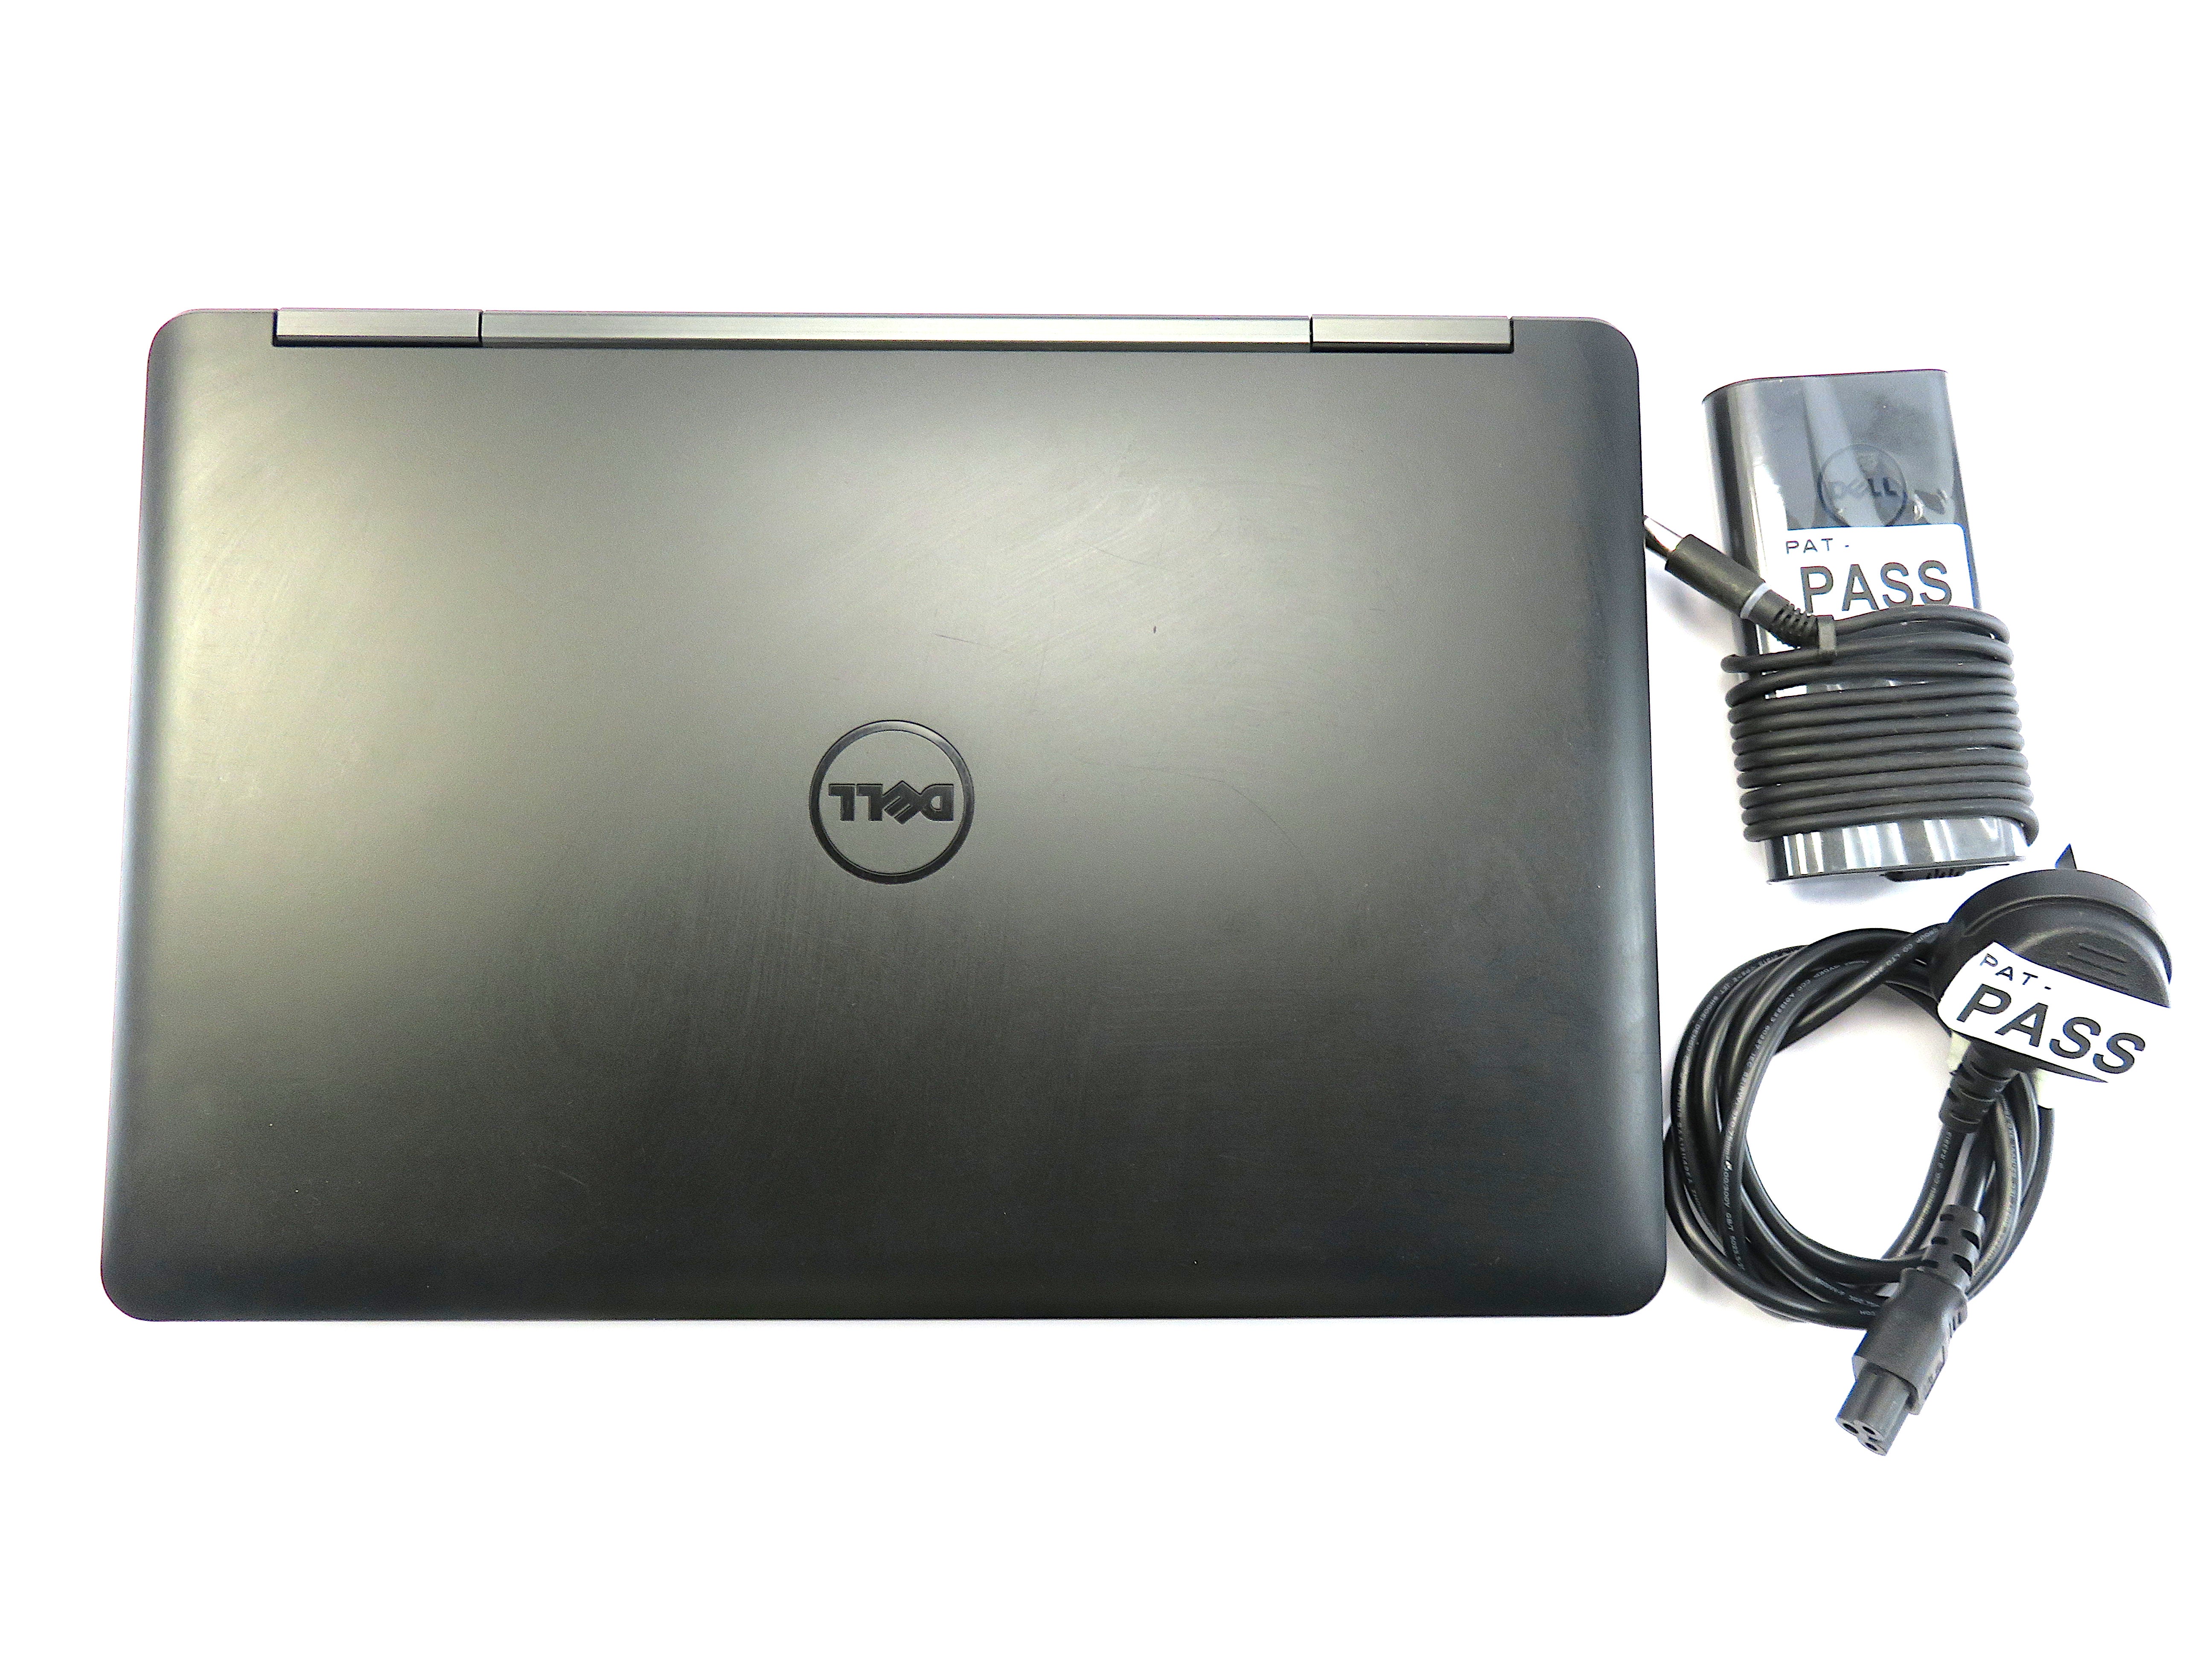 Dell Latitude E5540 Laptop, 15.6" Intel® Core i5, 8GB RAM, 256GB SSD